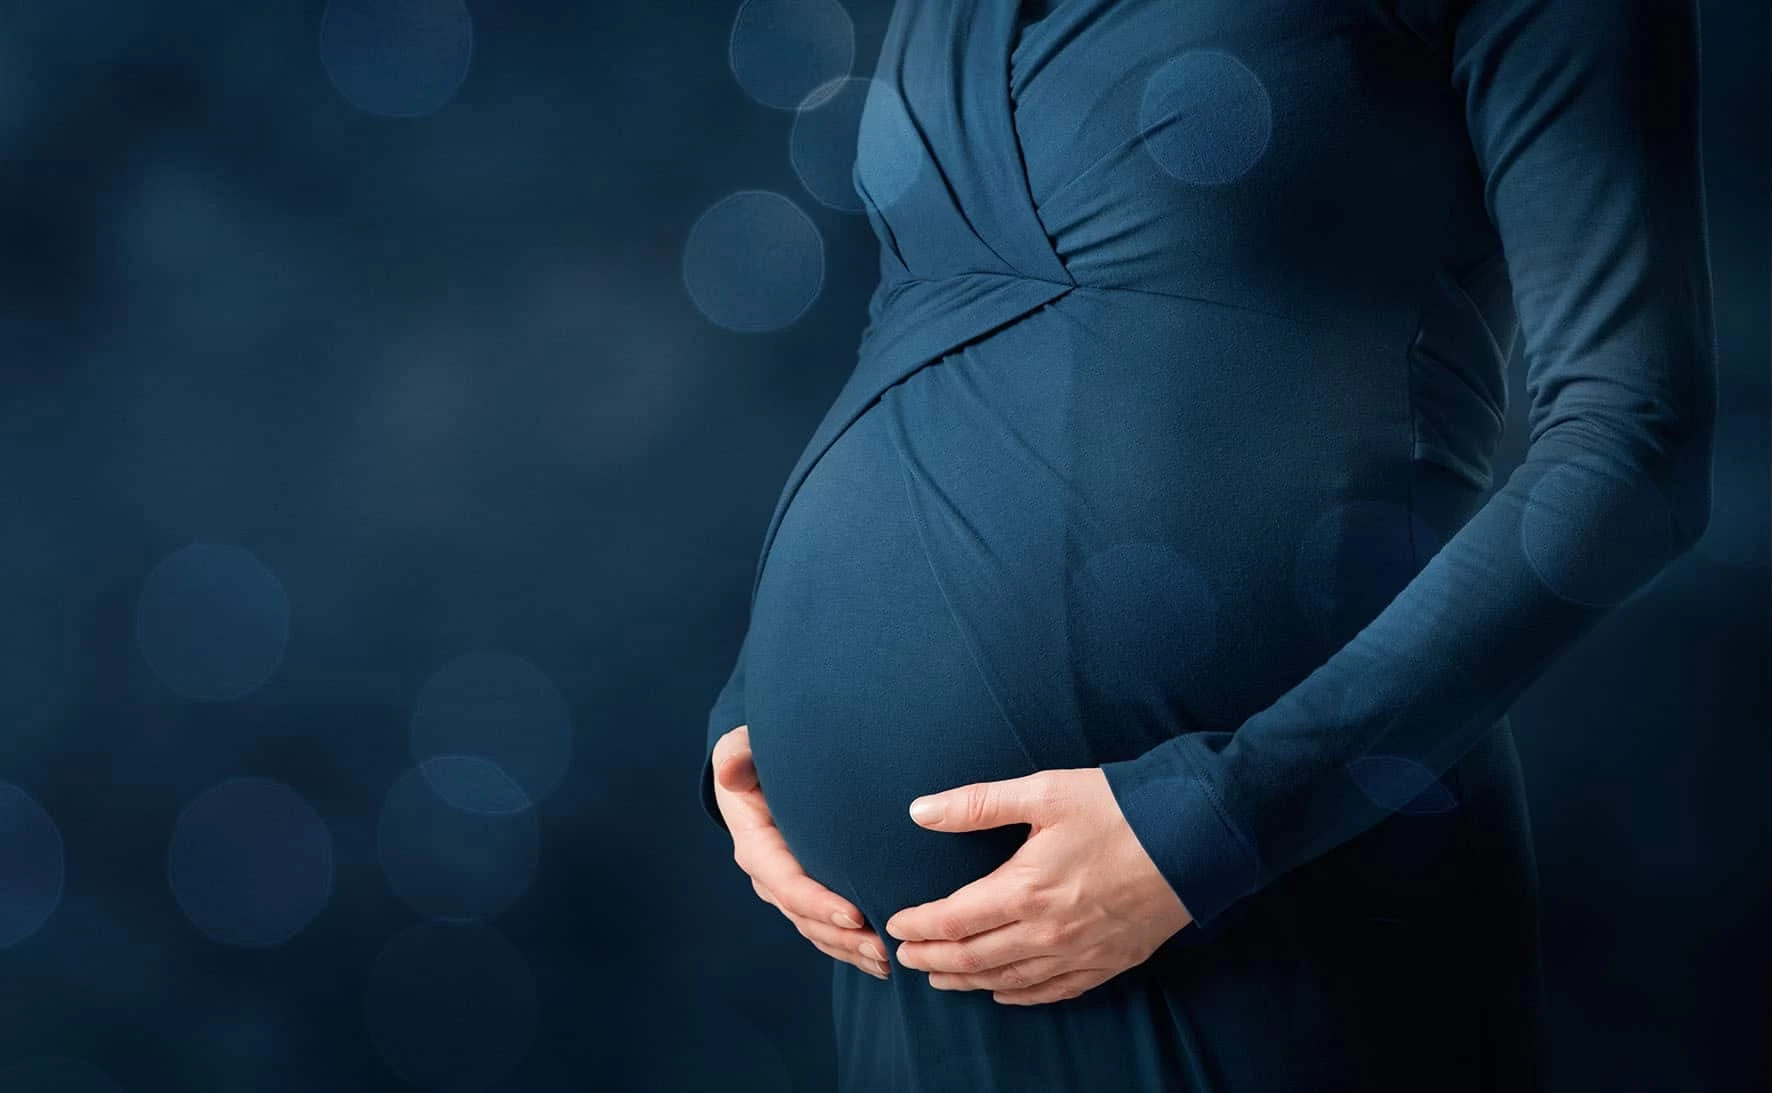 تفسير حلم رؤية الميت للمرأة الحامل بمختلف الأوضاع والدلالات